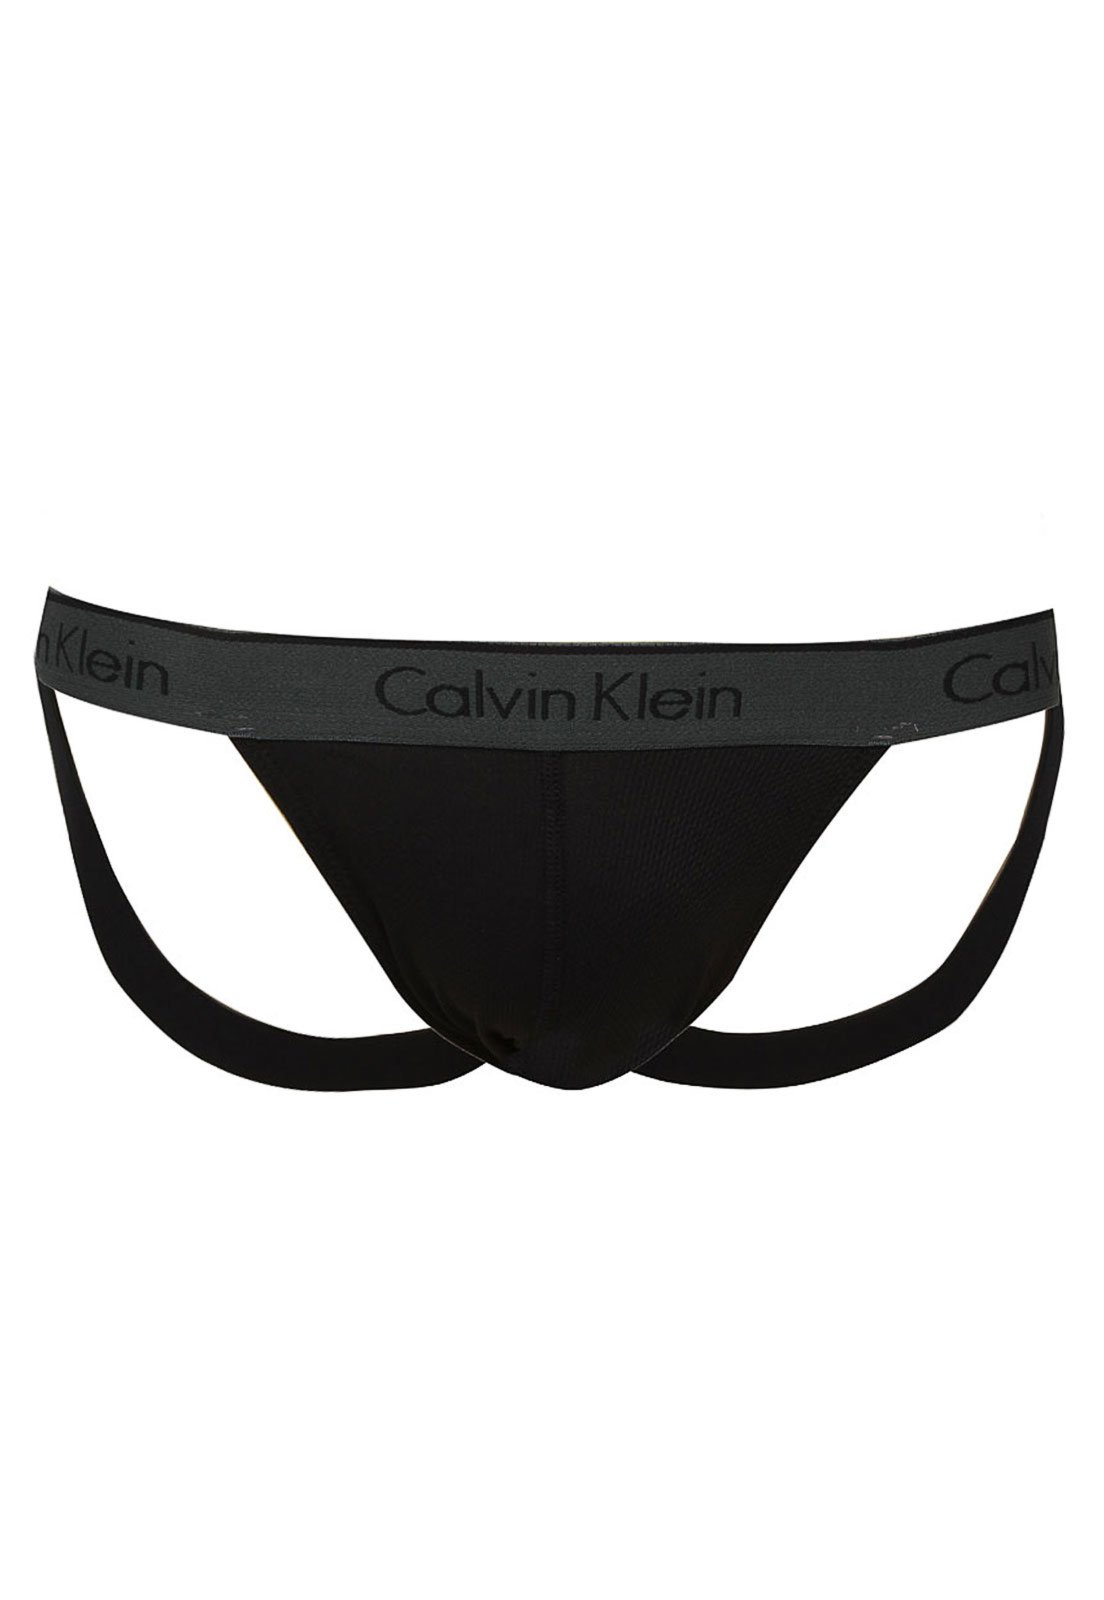 Cueca Calvin Klein Underwear Jockstrap Elástico Preta - Compre Agora